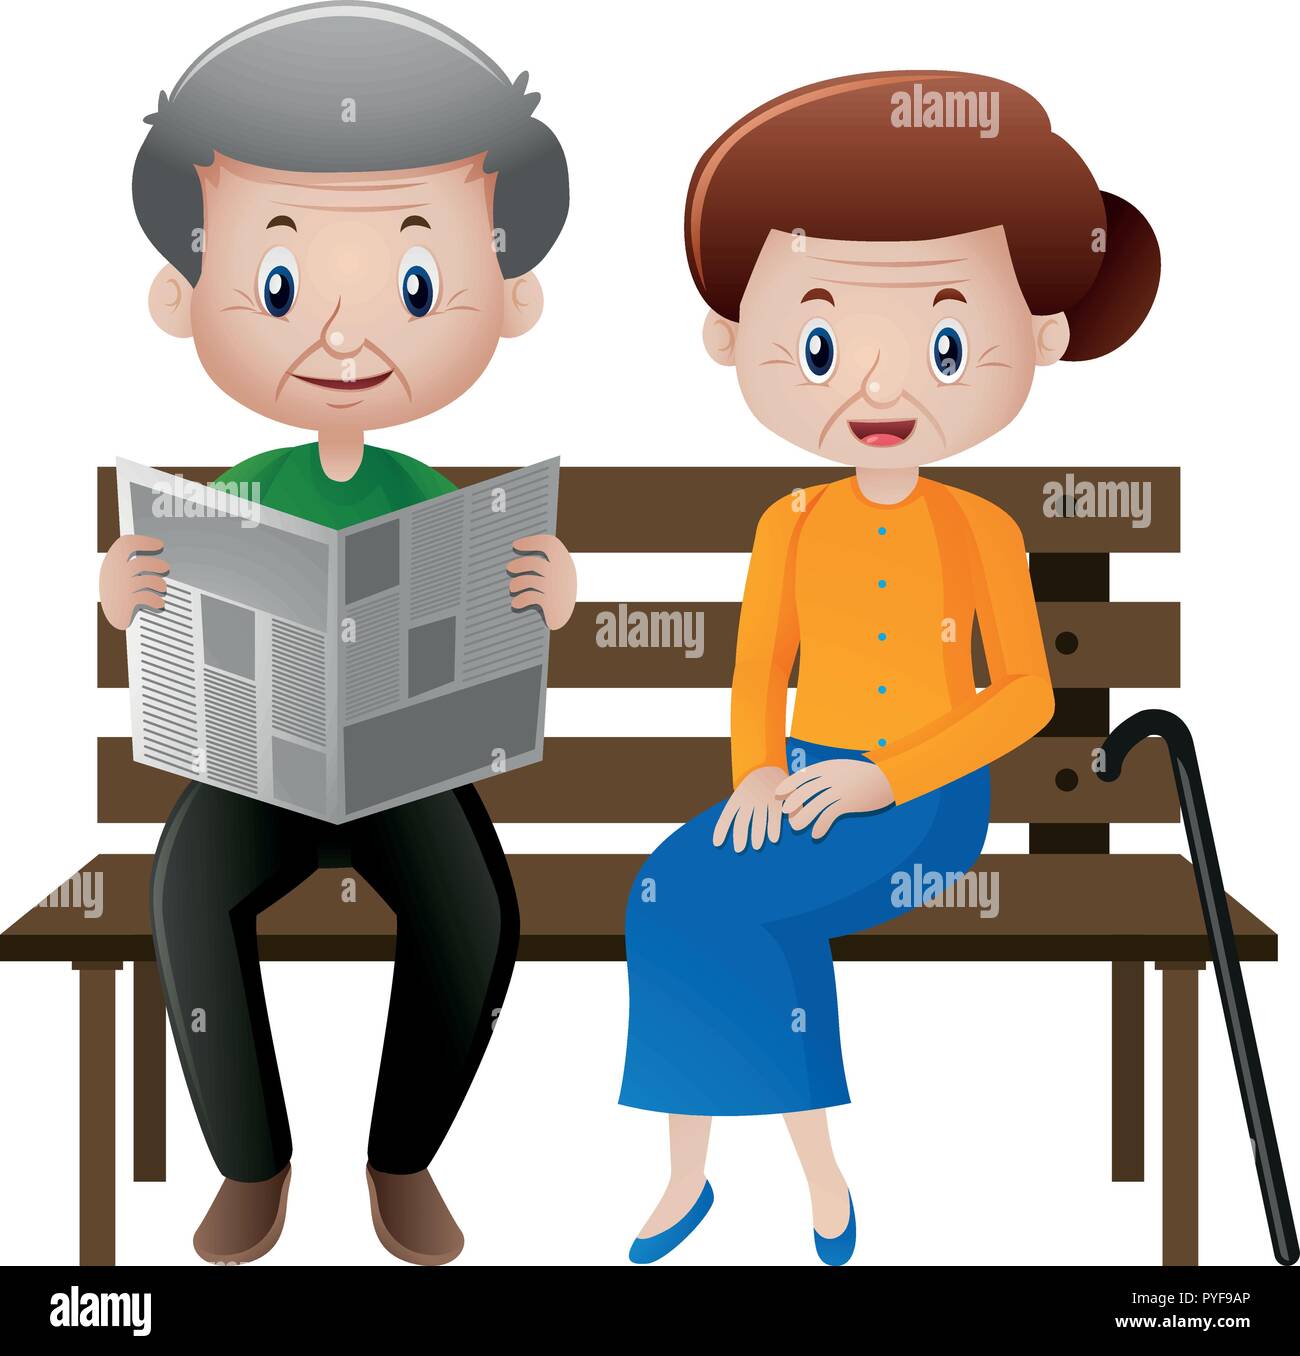 Grand-père et grand-mère assise sur le siège illustration Illustration de Vecteur